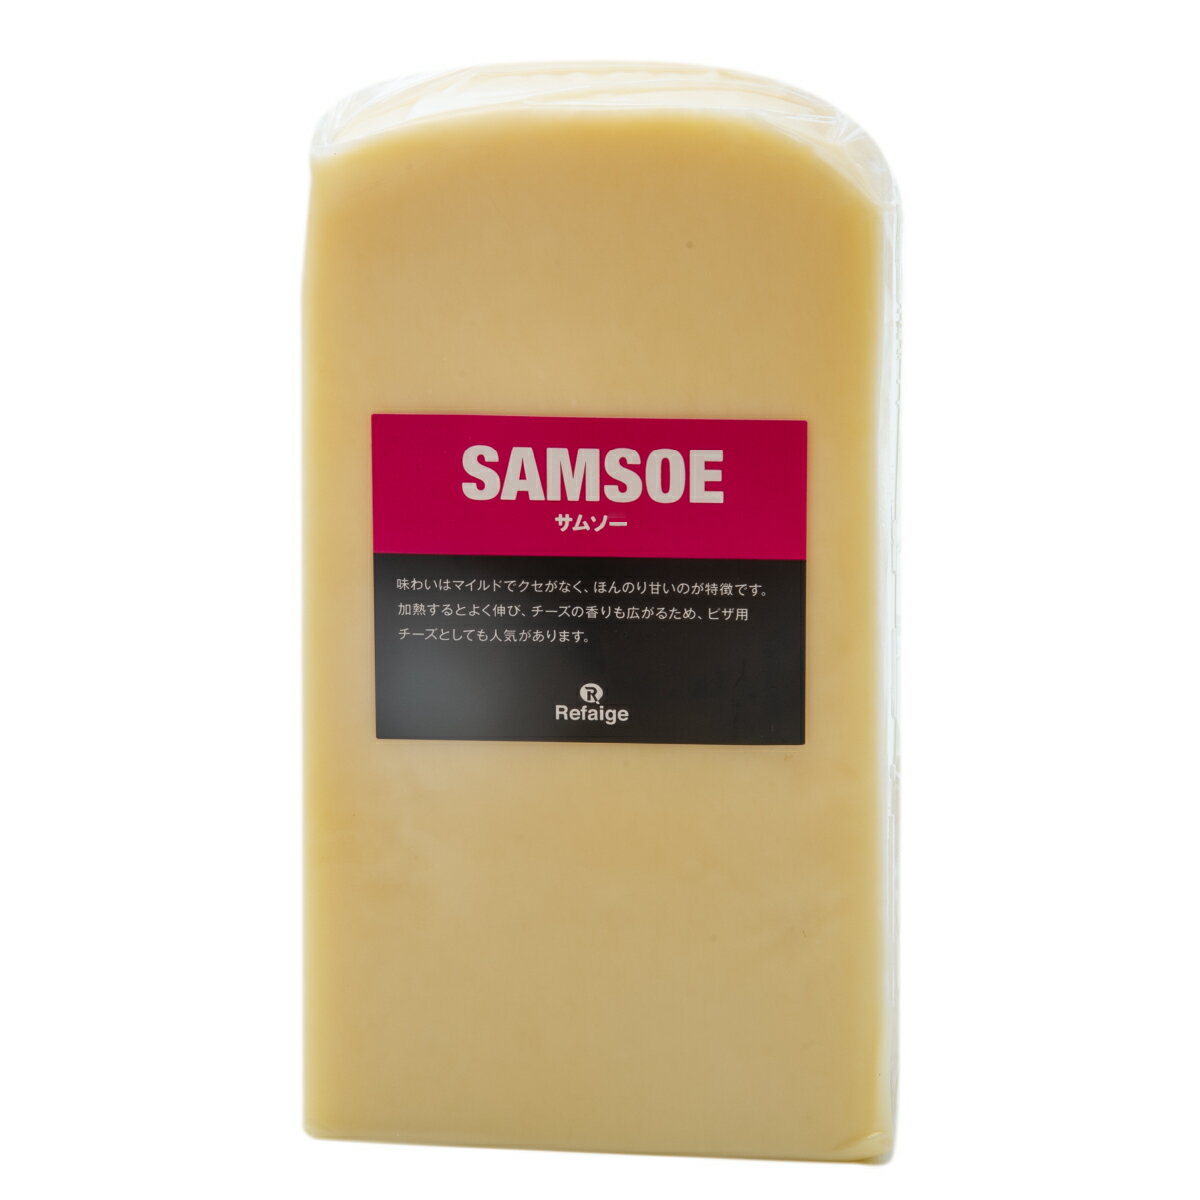 サムソー チーズ 約1kgカット 不定貫  デンマーク産 セミハードチーズ 無添加 チーズ専門店 業務用 のびるチーズ